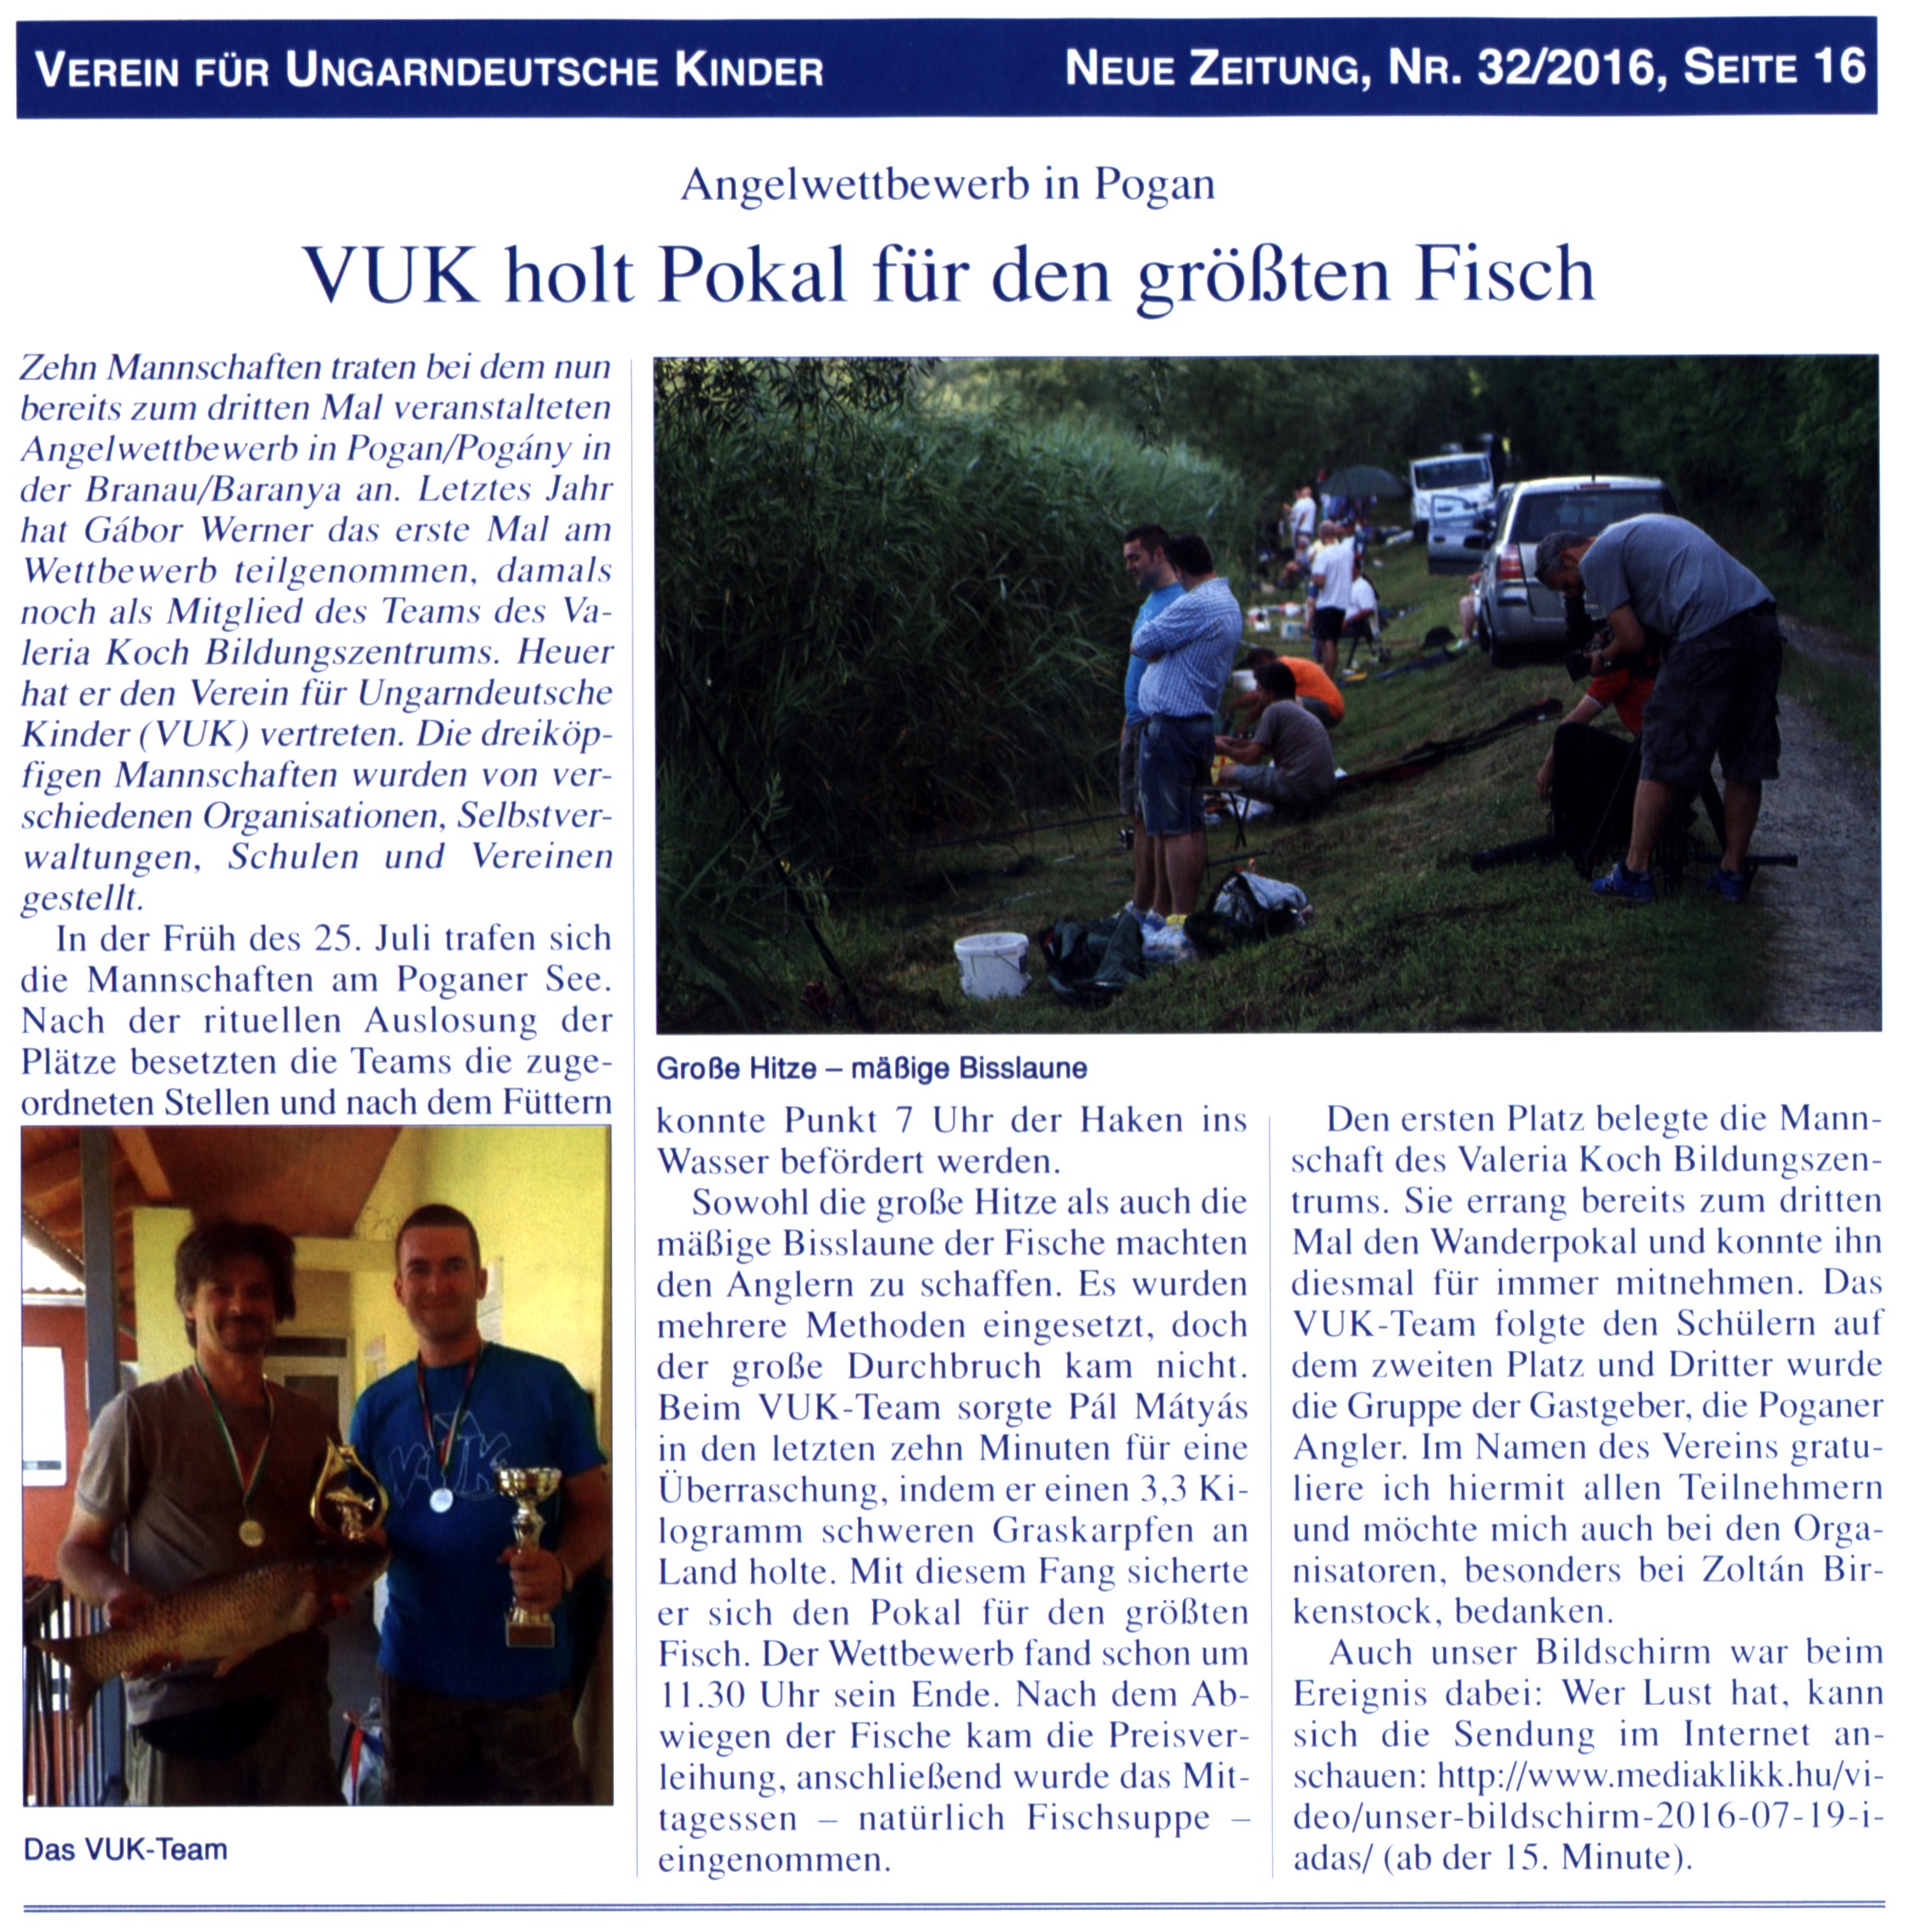 VUK holt Pokal für den größten Fisch Angelwettbewerb in Pogan